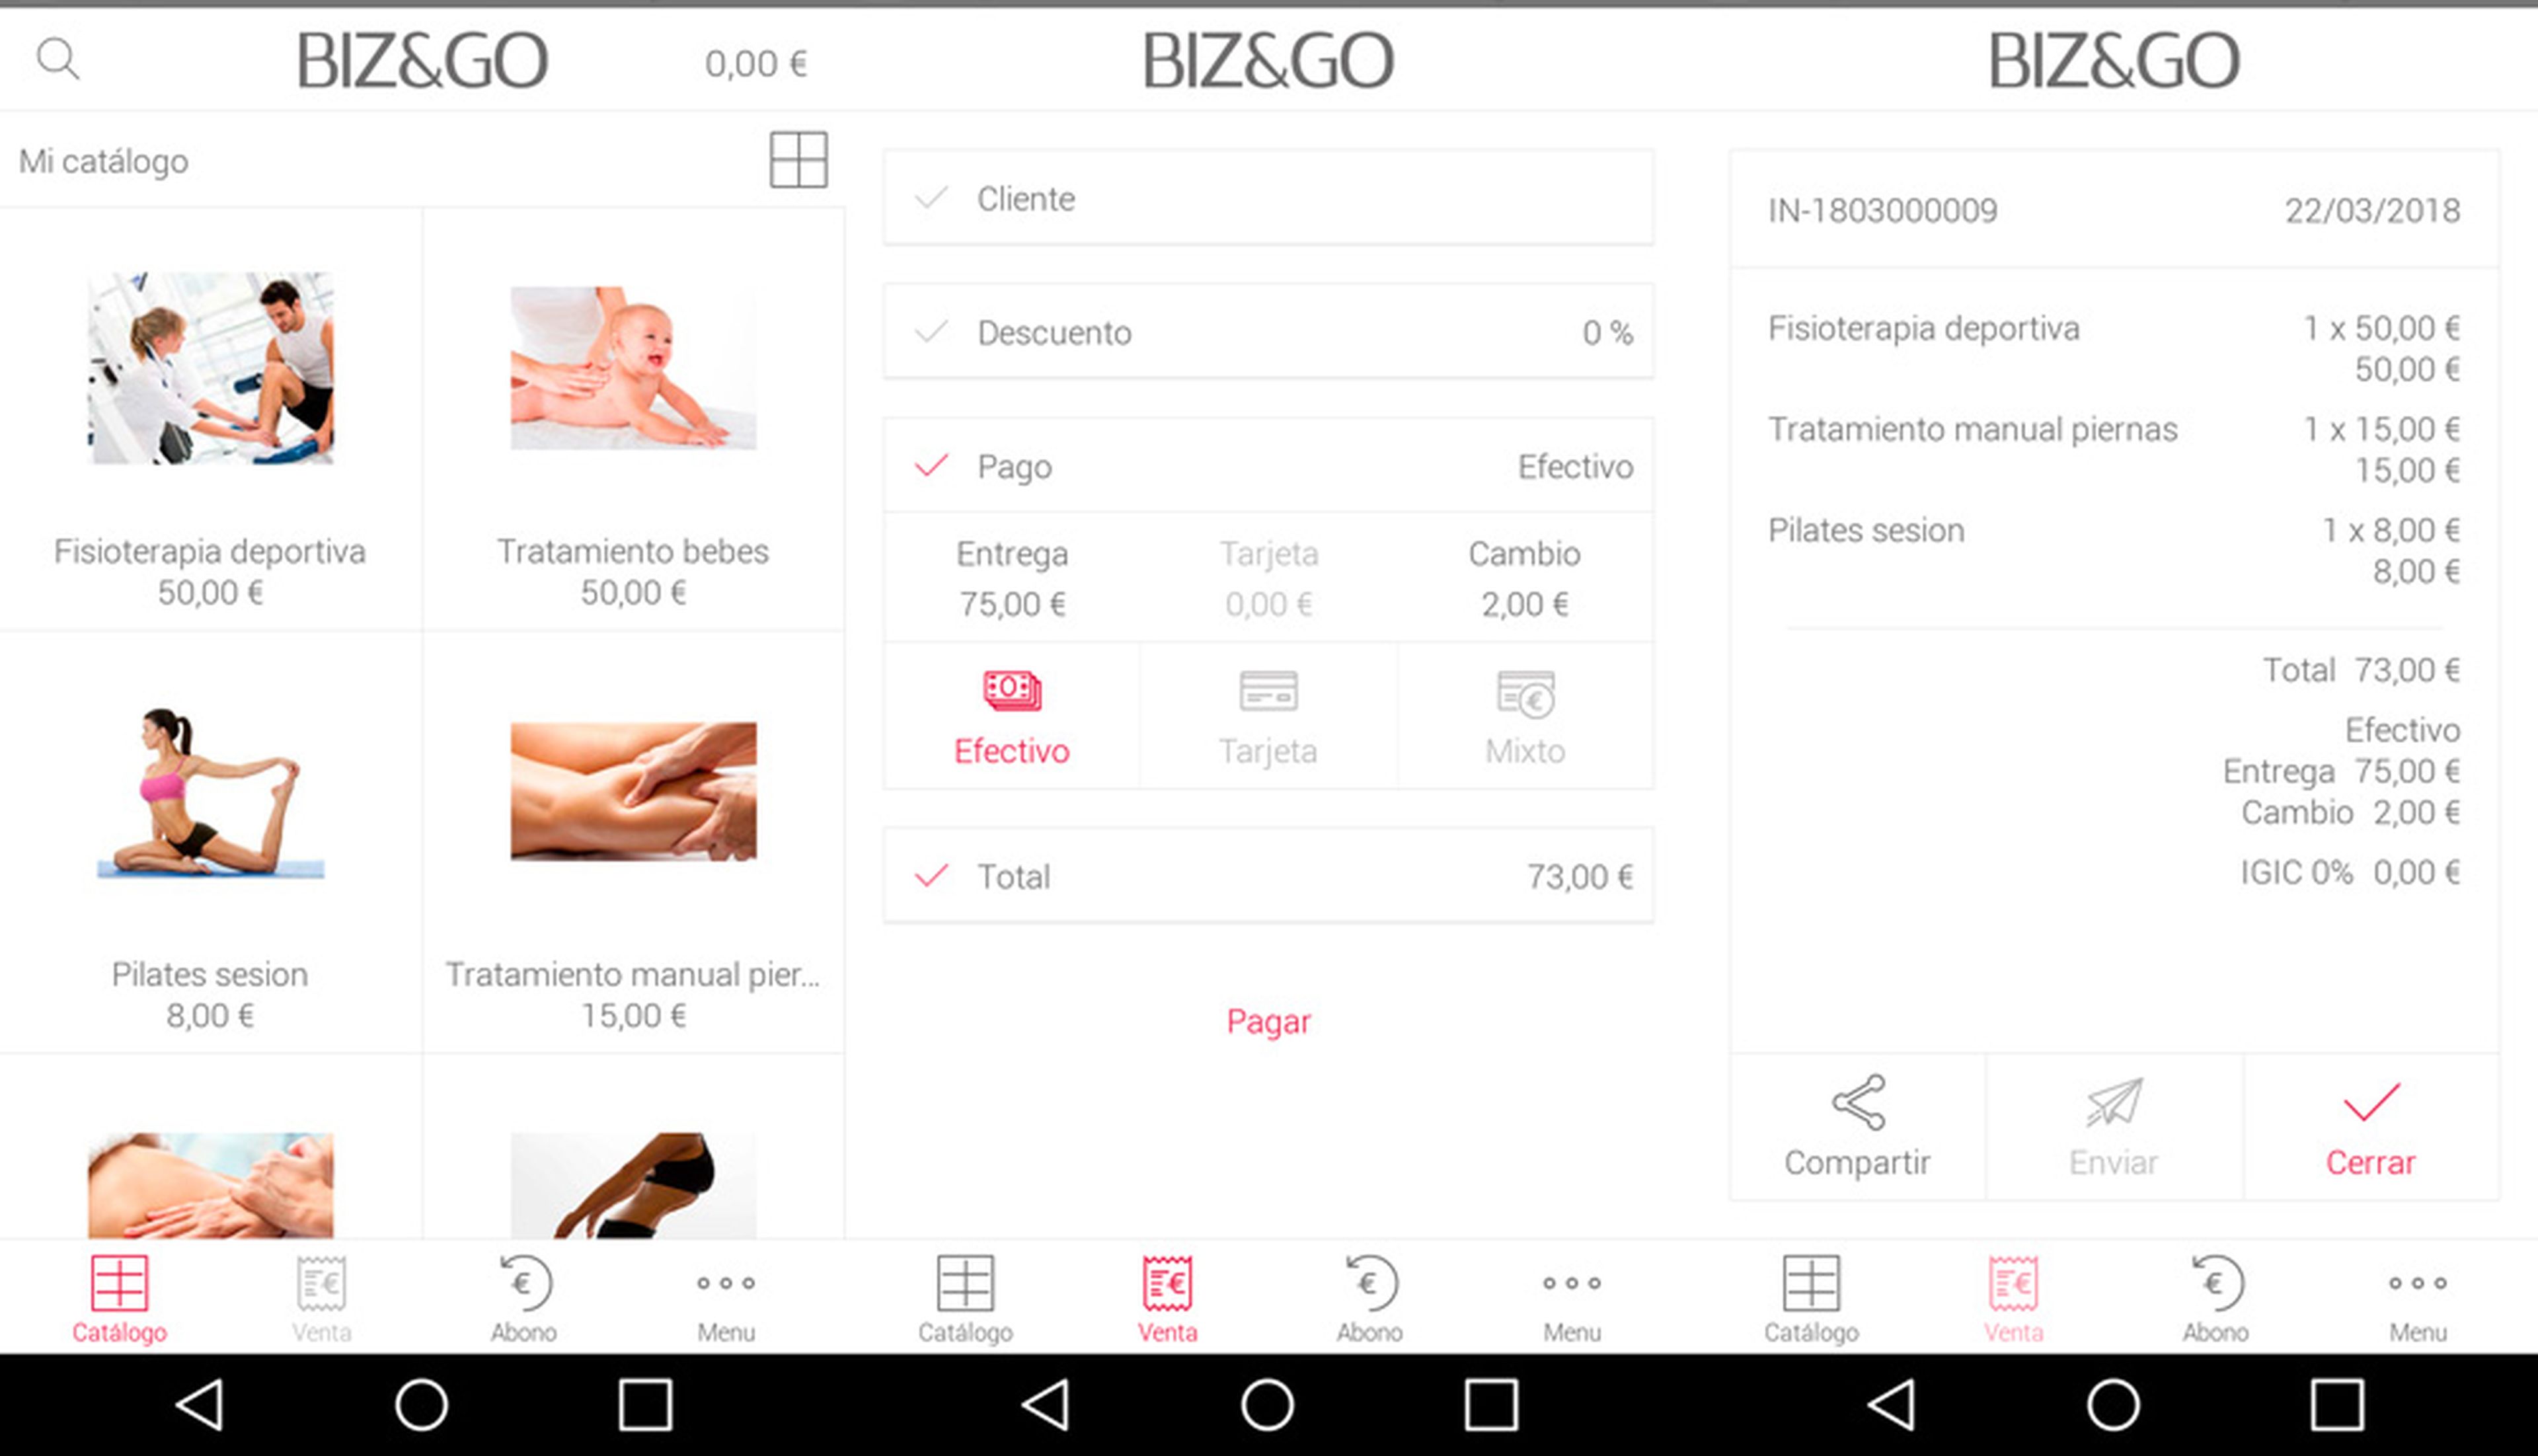 La aplicación de LG Biz&Go permite llevar un control total del negocio a través del teléfono móvil.